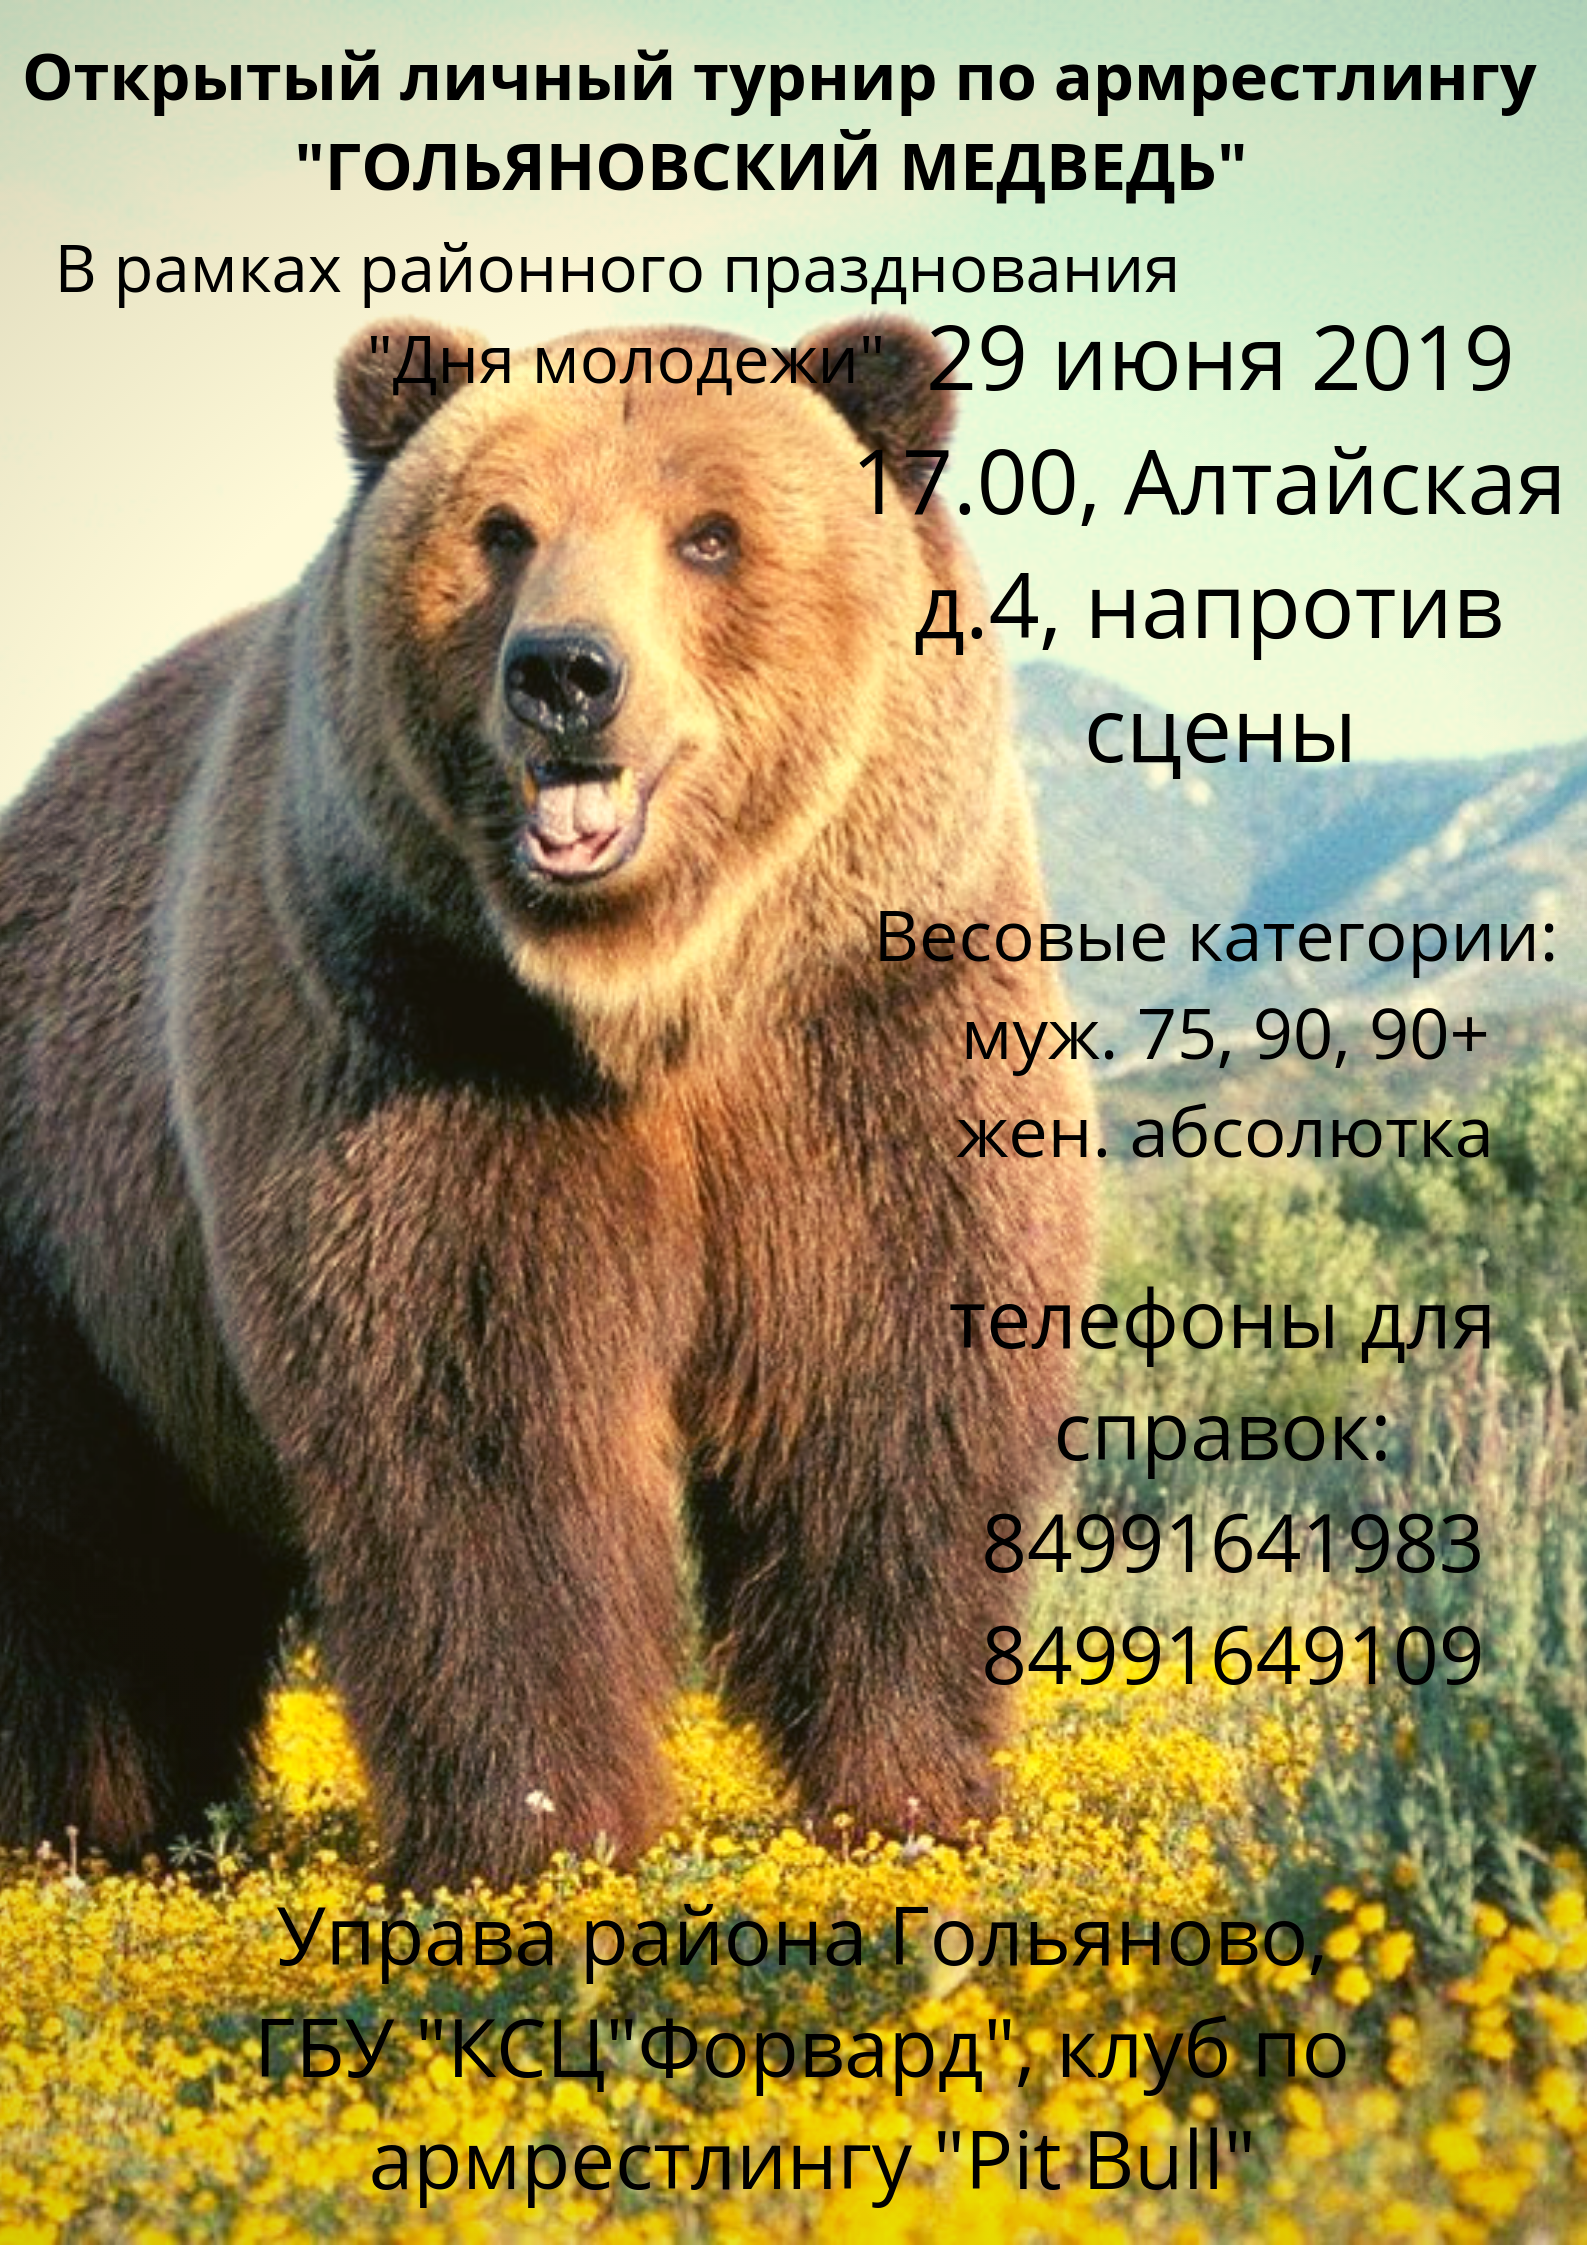 Открытый личный турнир по армрестлингу "Гольяновский медведь"